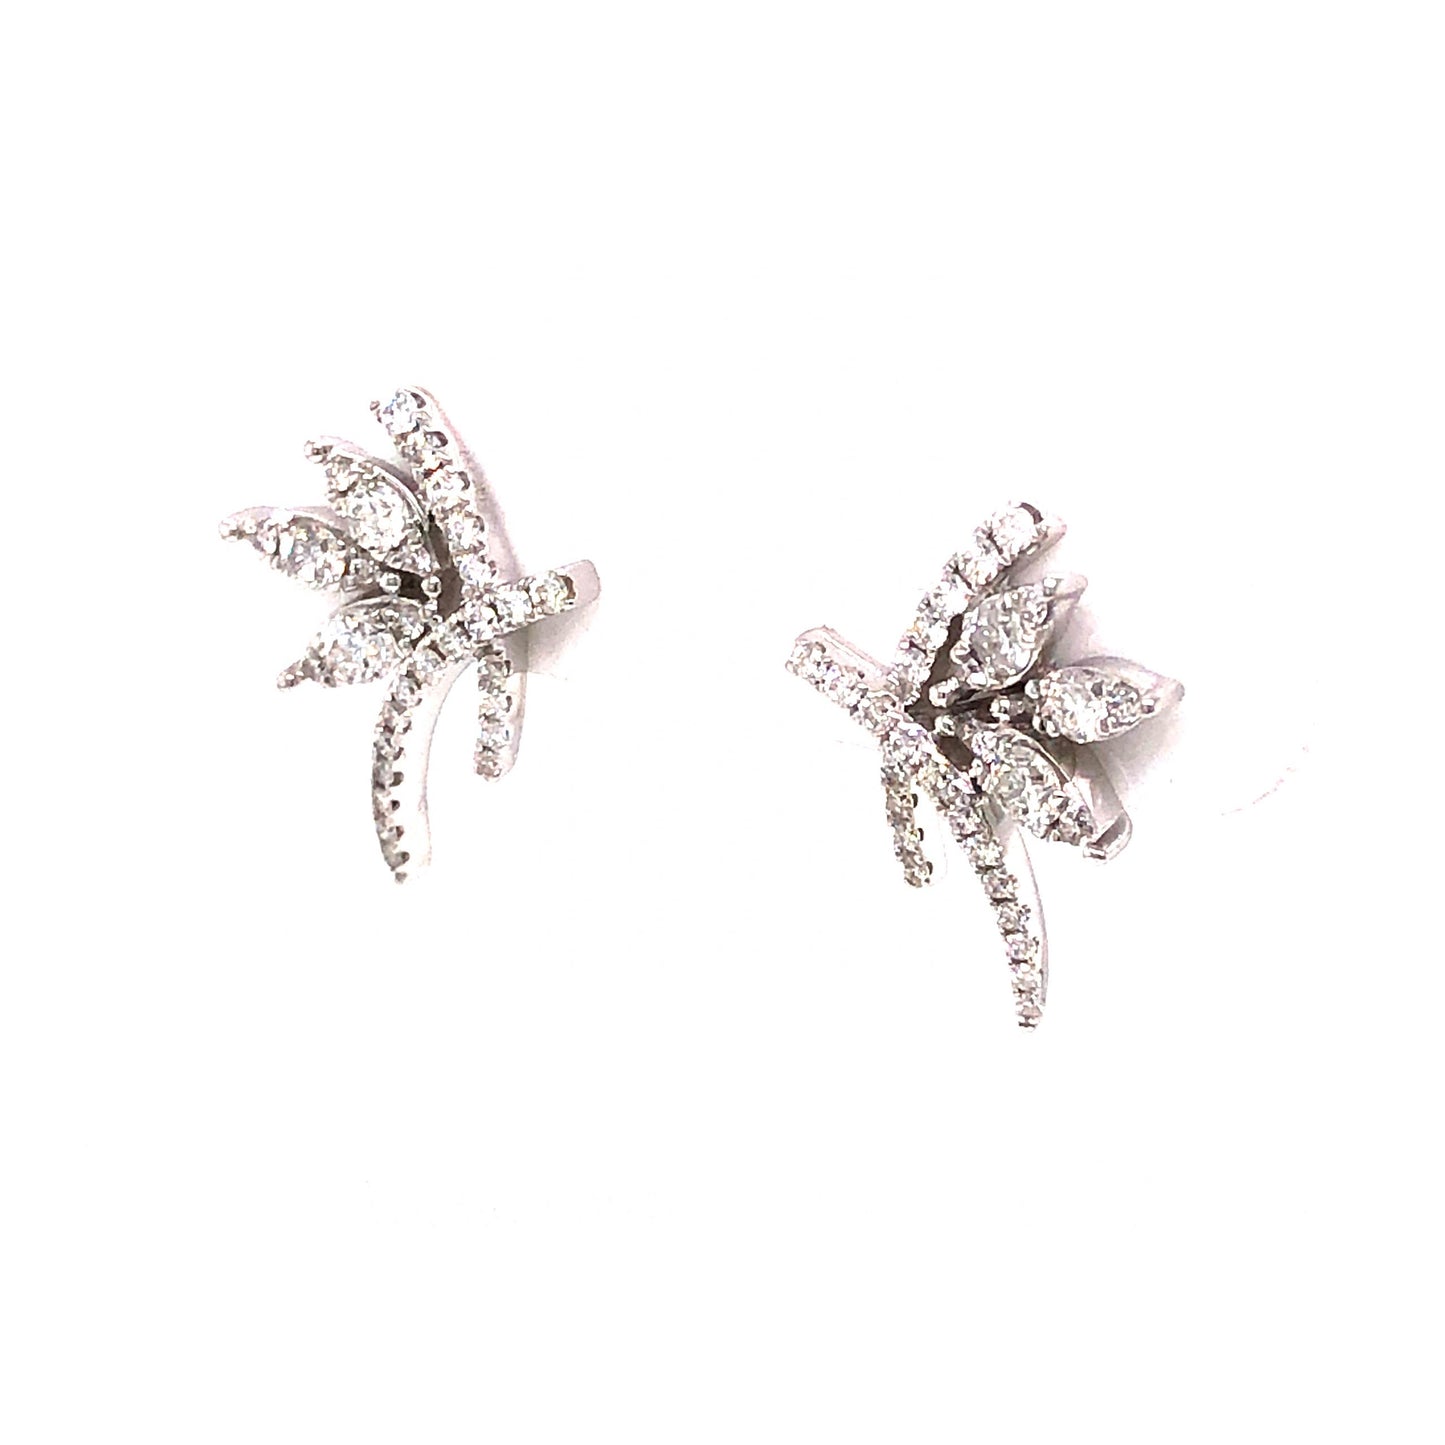 .38 Diamond Cluster Earrings in 18k White Gold